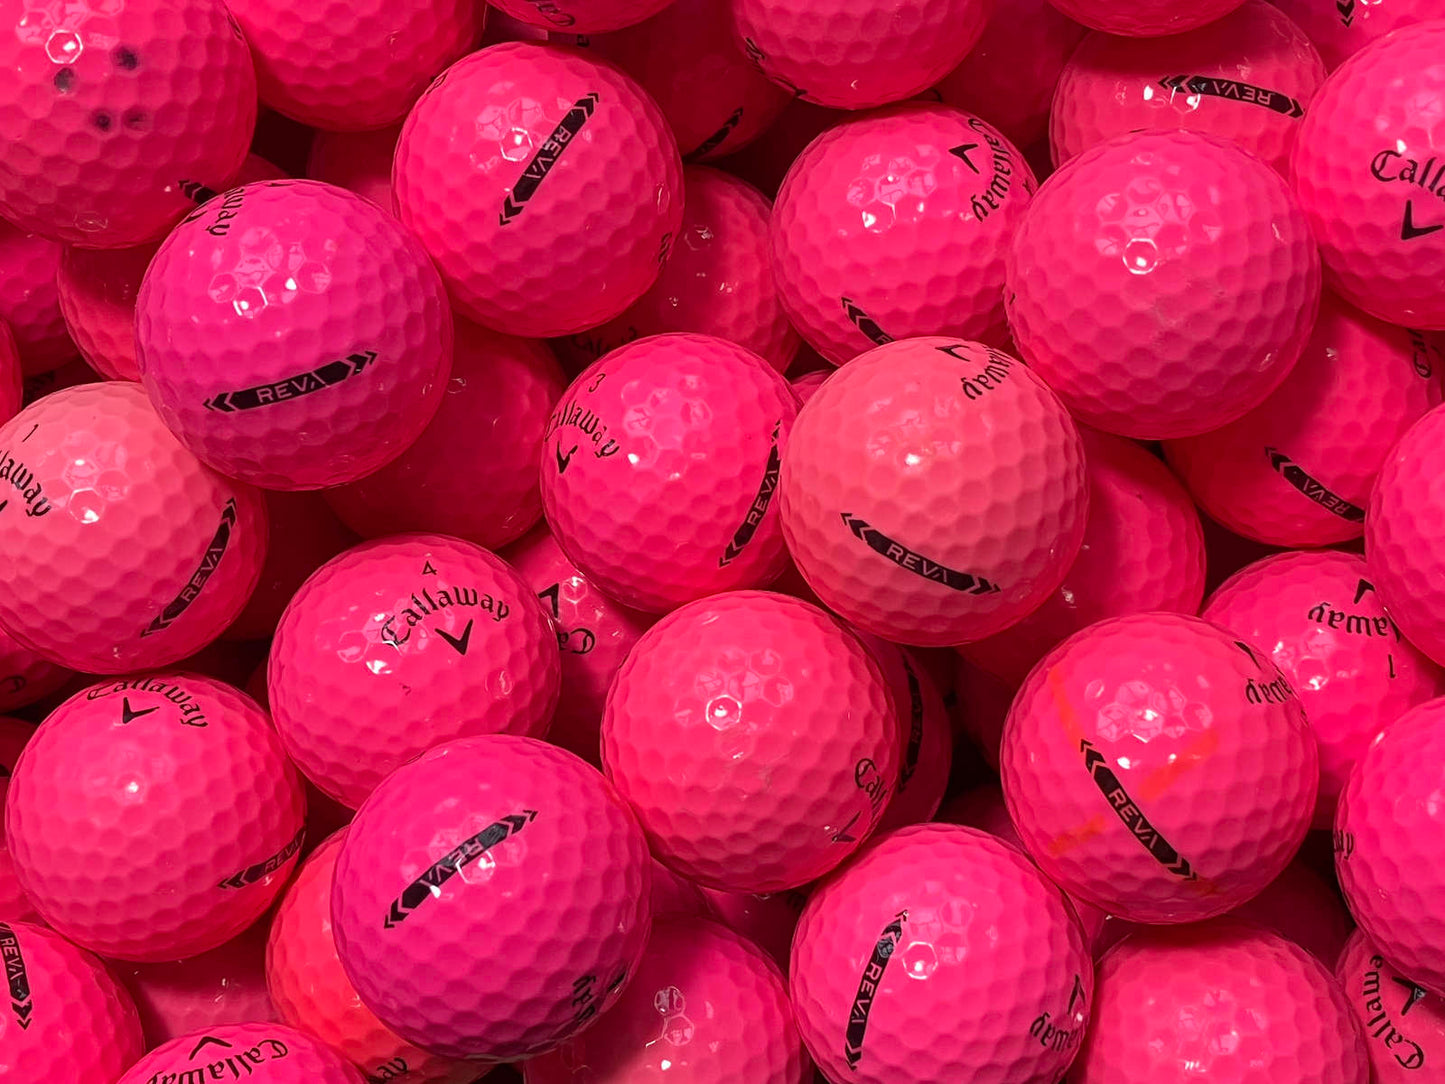 Callaway REVA Pink Lakeballs - gebrauchte REVA Pink Golfbälle AA/AAA-Qualität